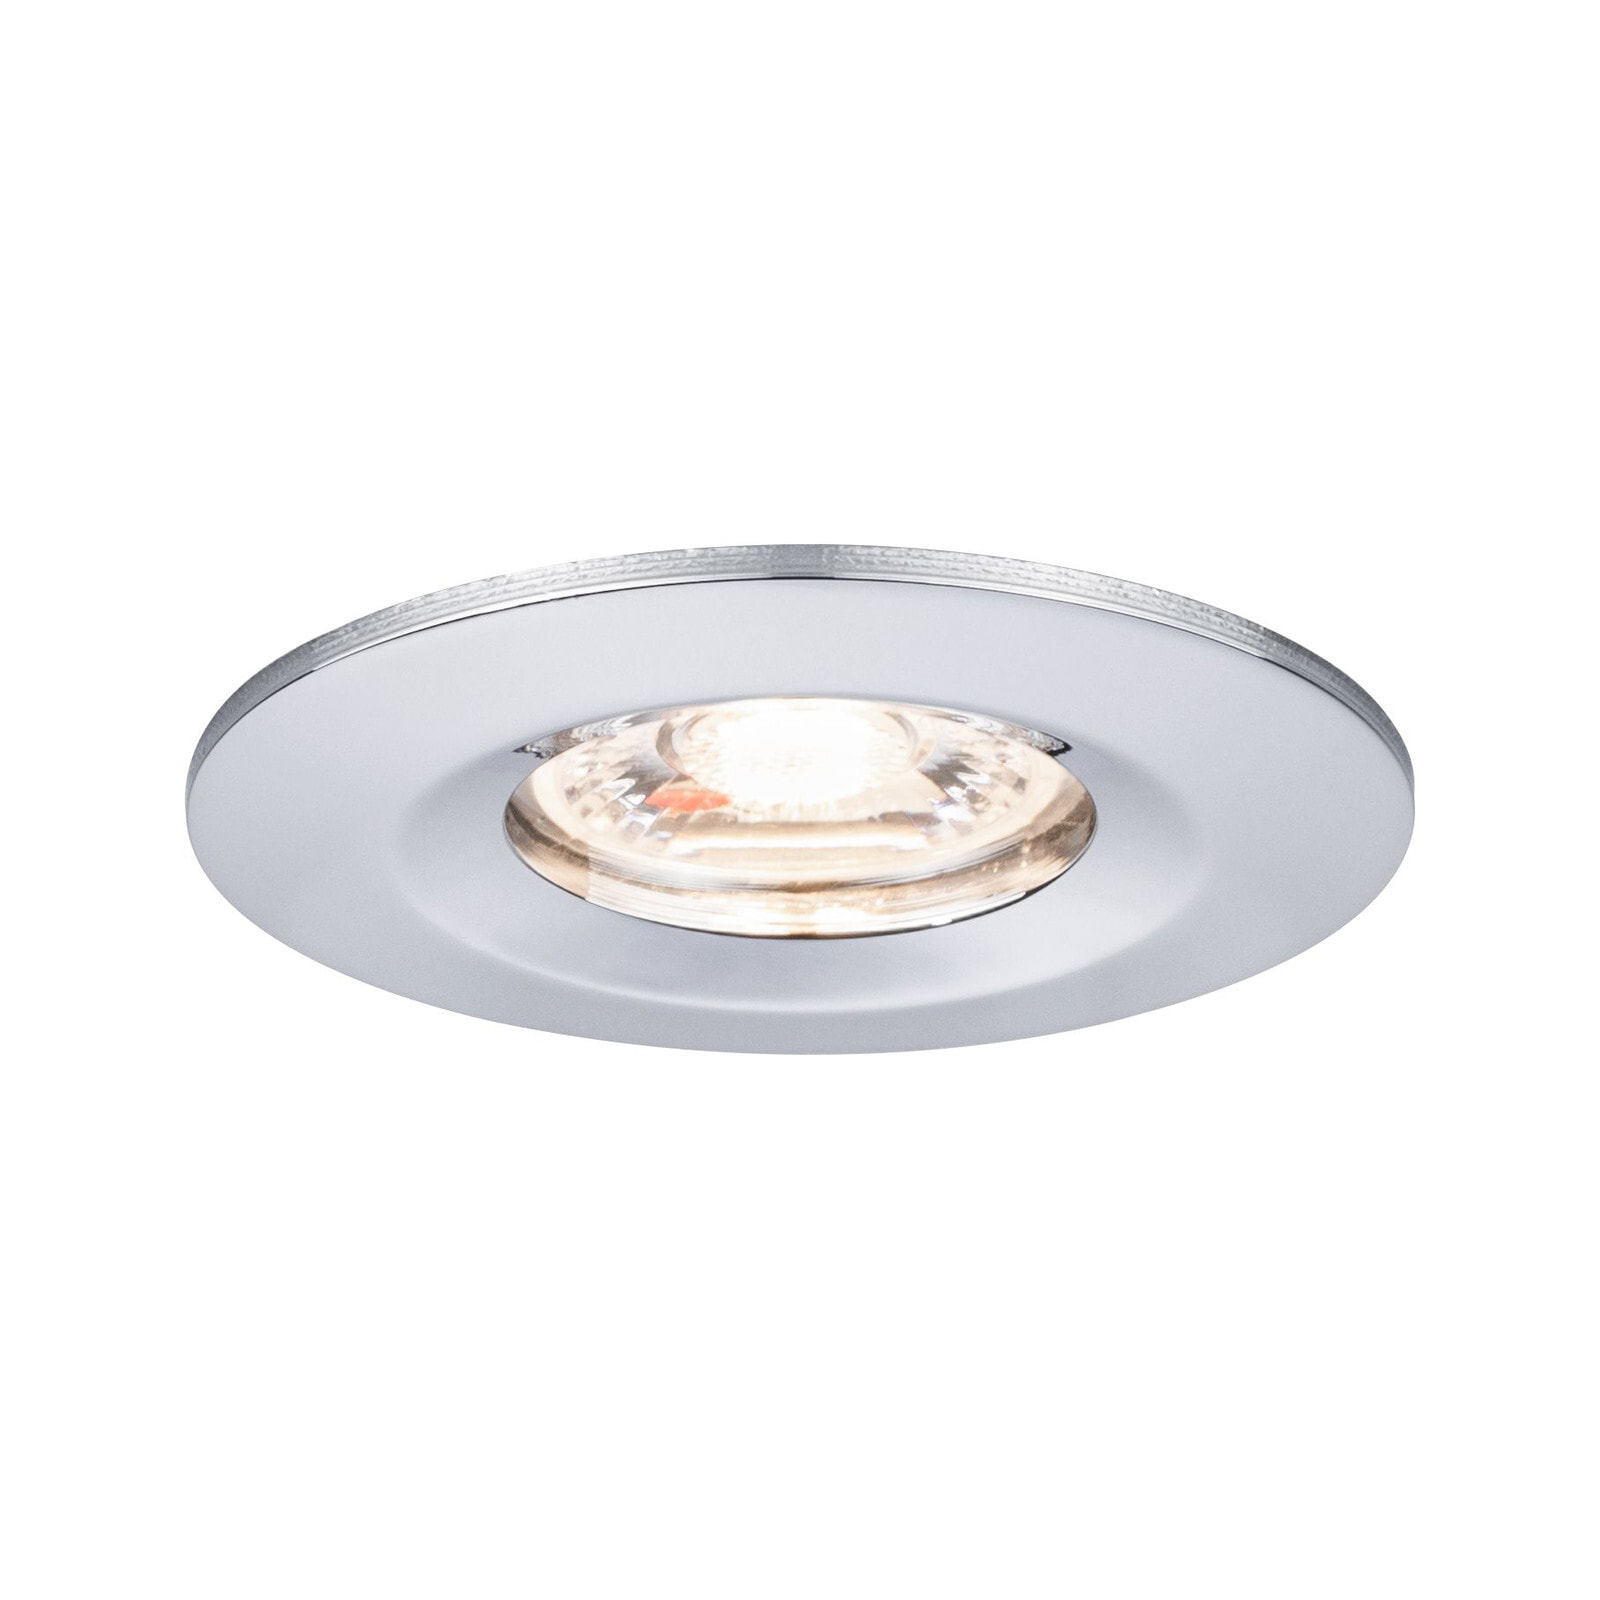 PAULMANN 943.02 - Recessed lighting spot - Non-changeable bulb(s) - 1 bulb(s) - LED - 2700 K - Chrome